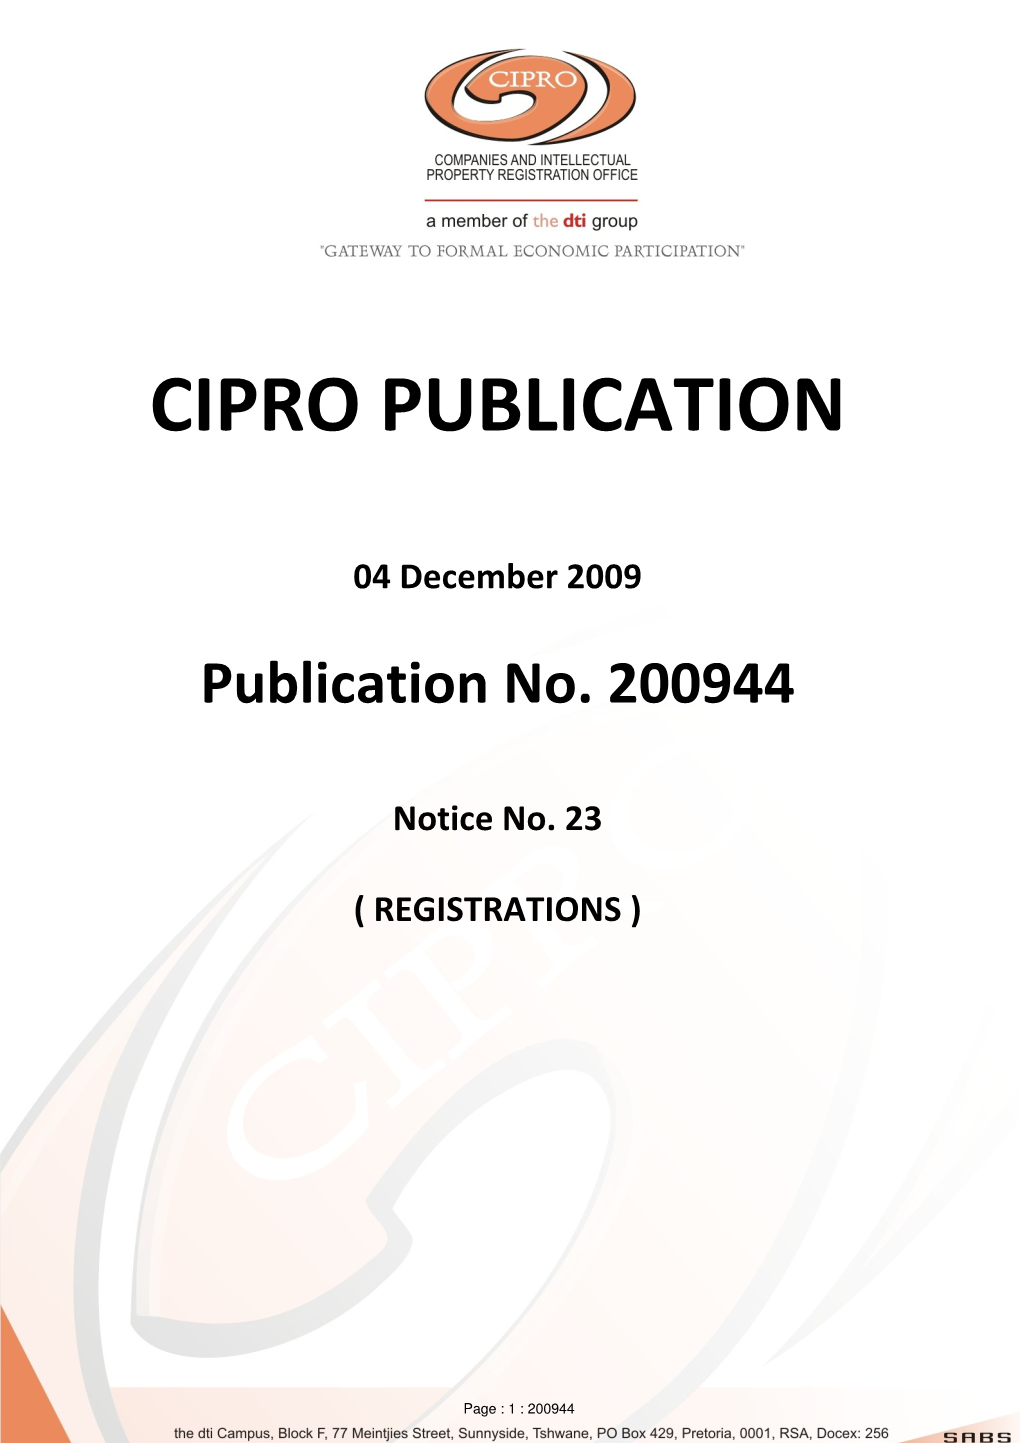 Cipro Publication